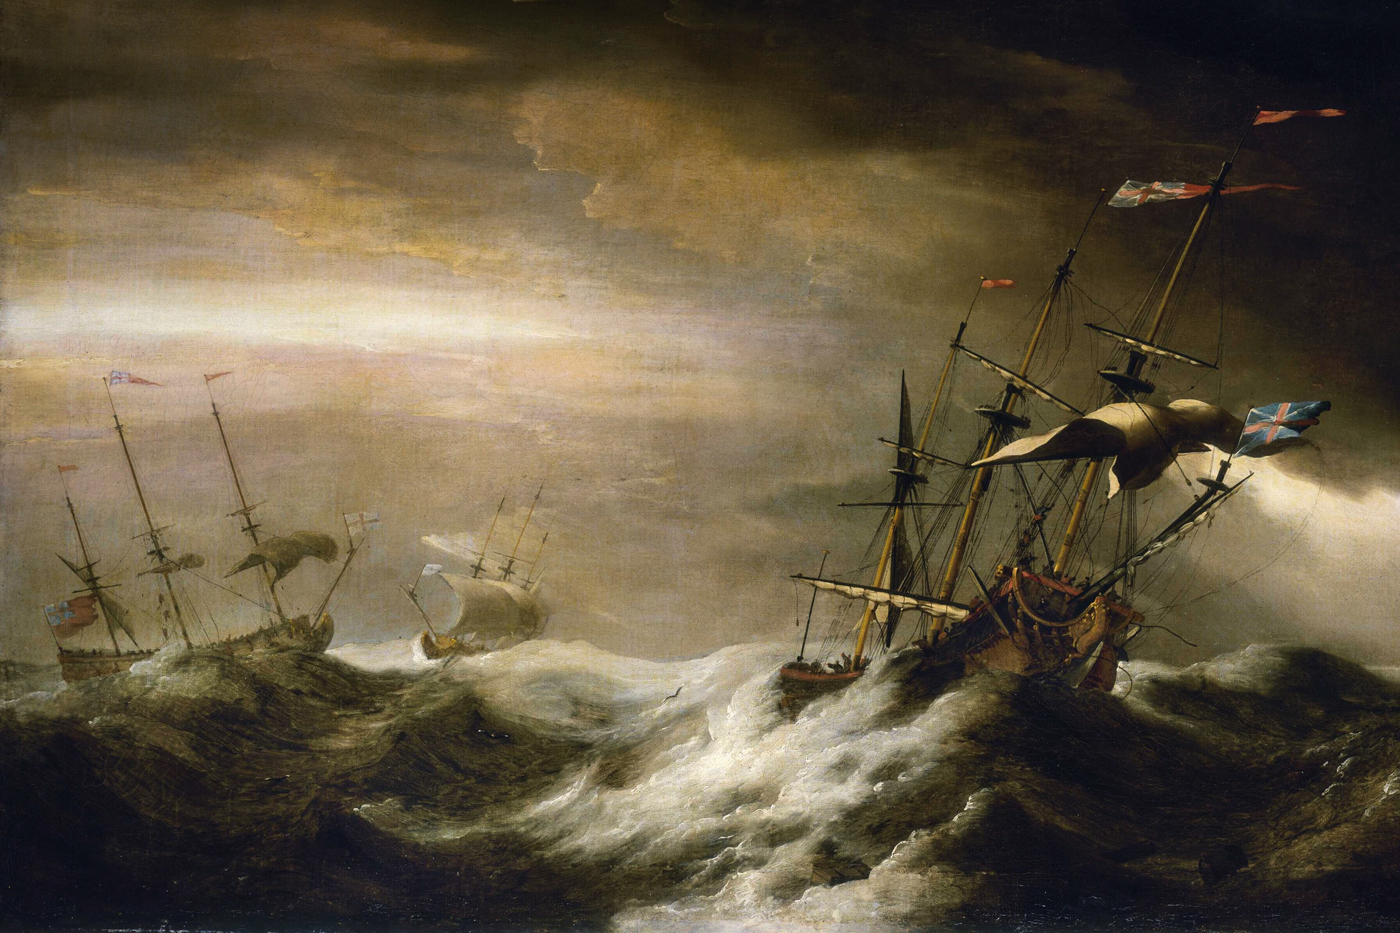 Ships at sea during storm